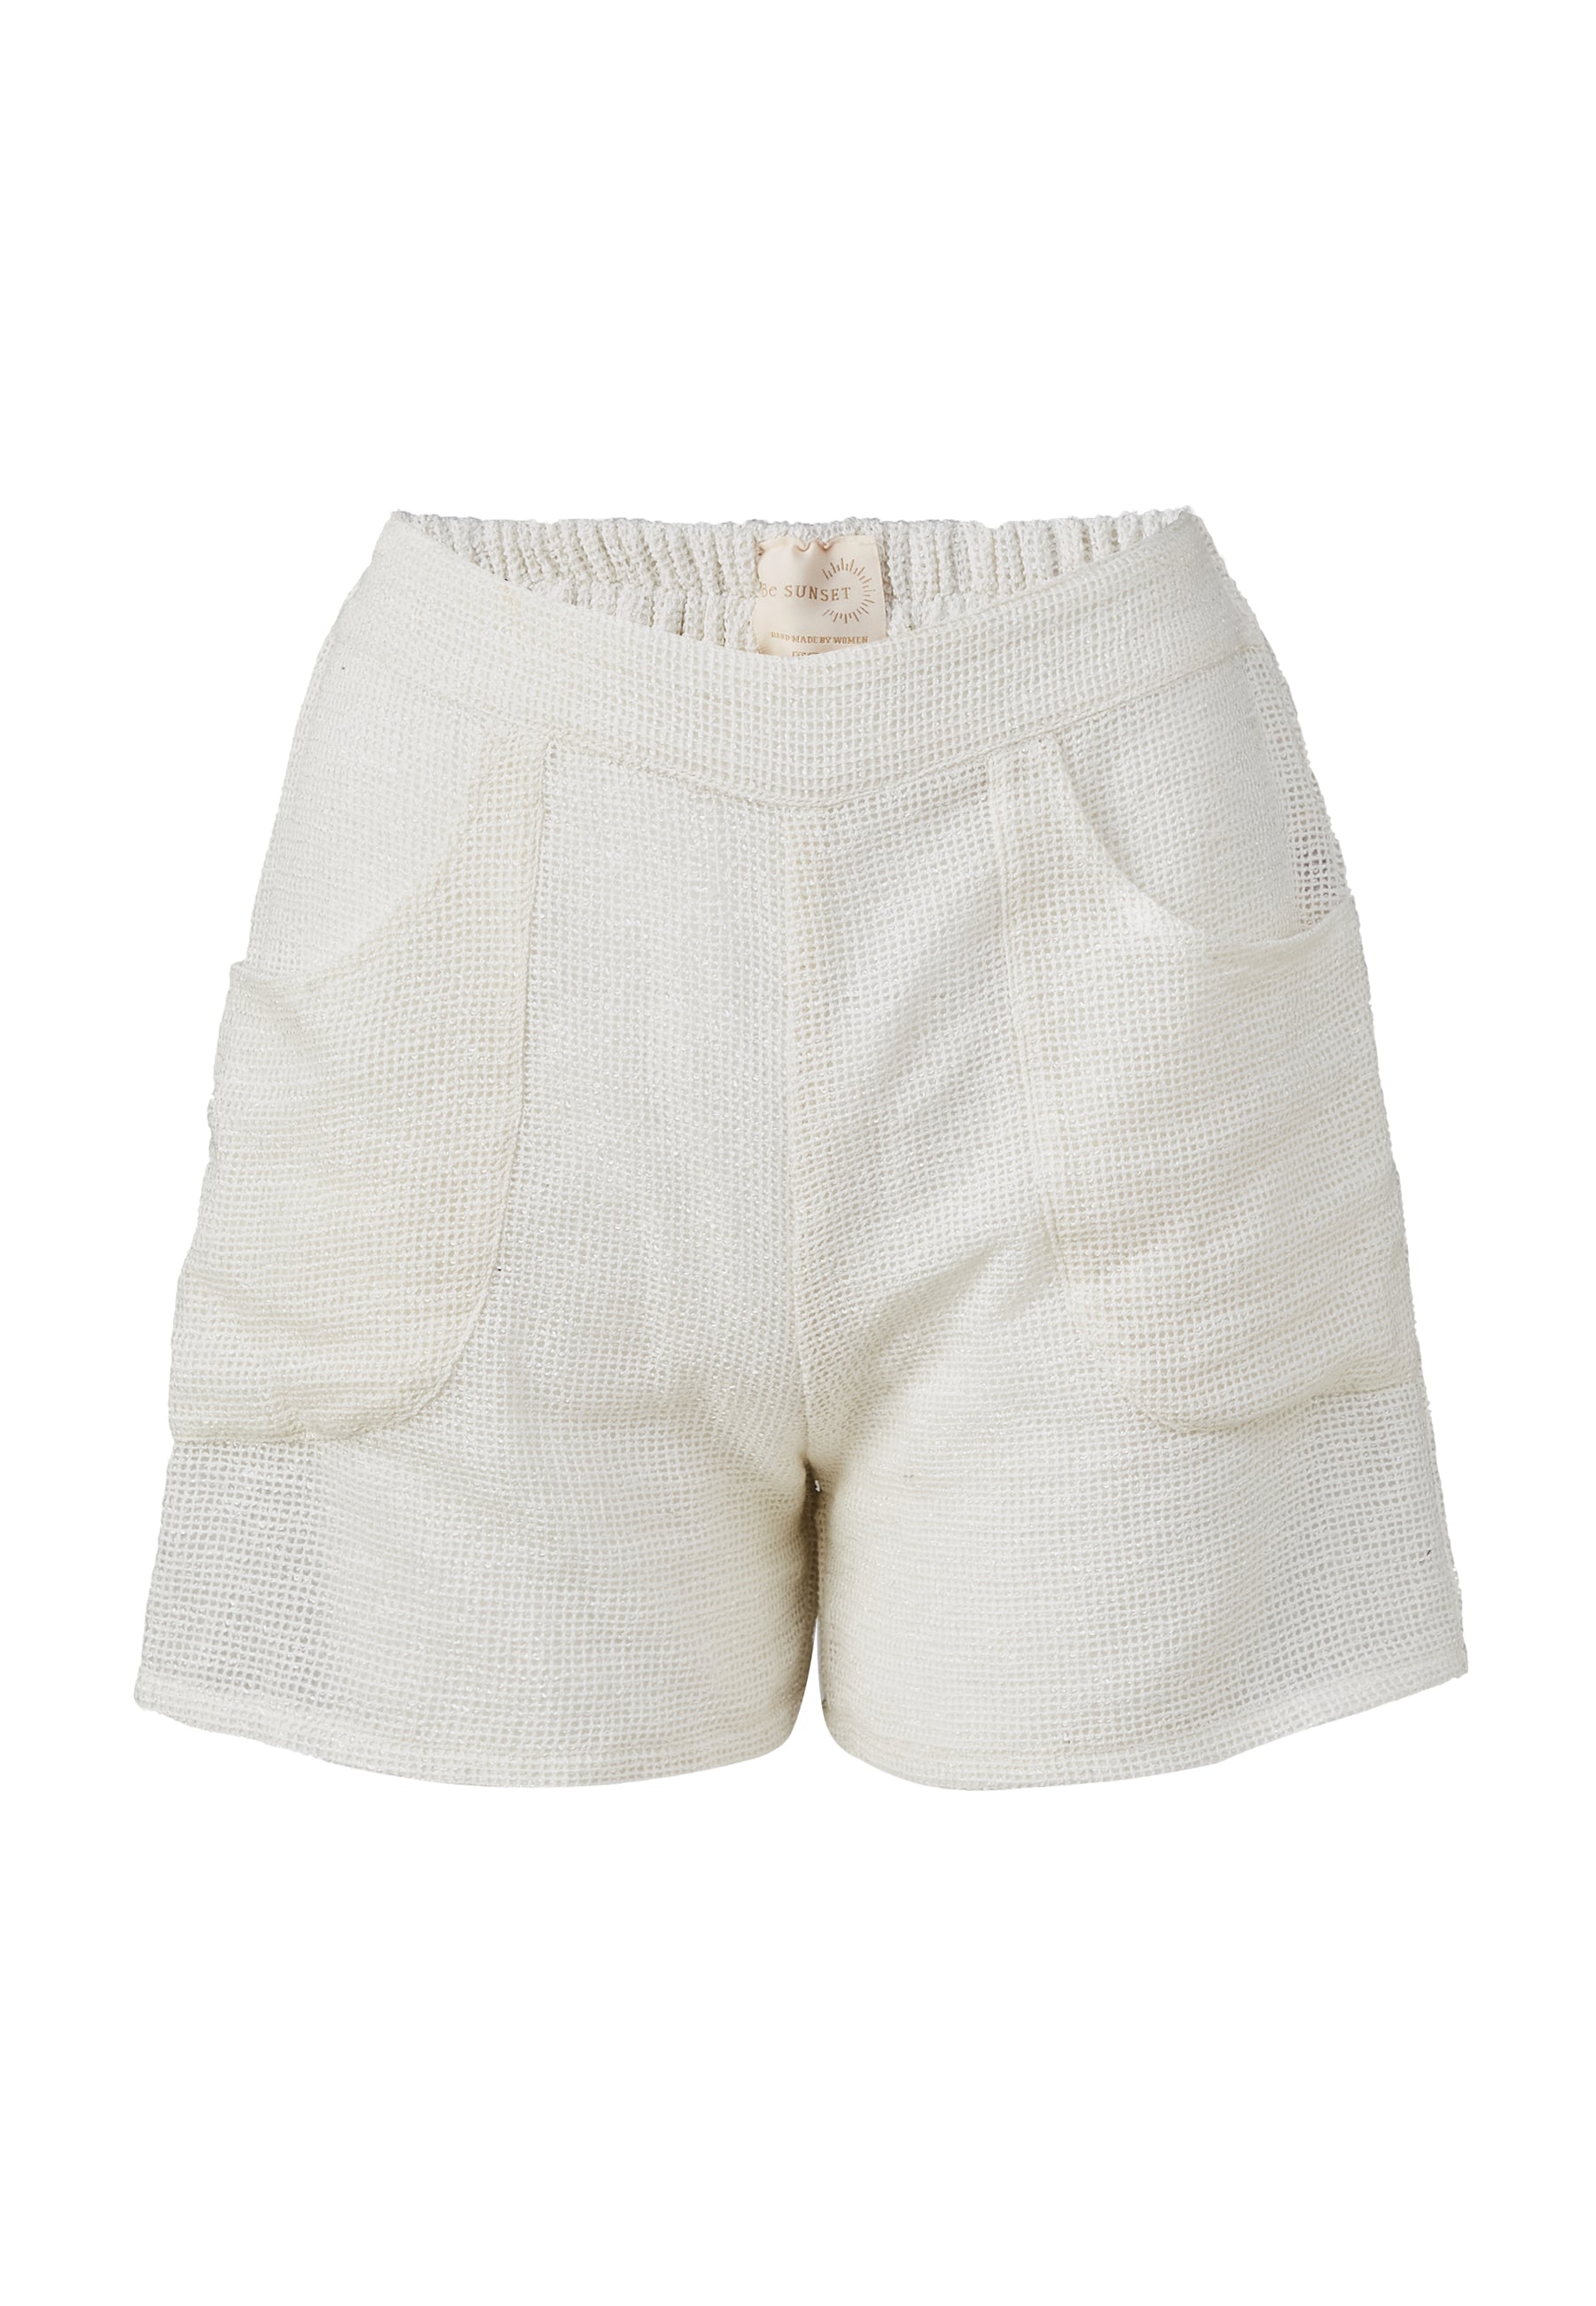 Pantalones cortos blancos de la bahía